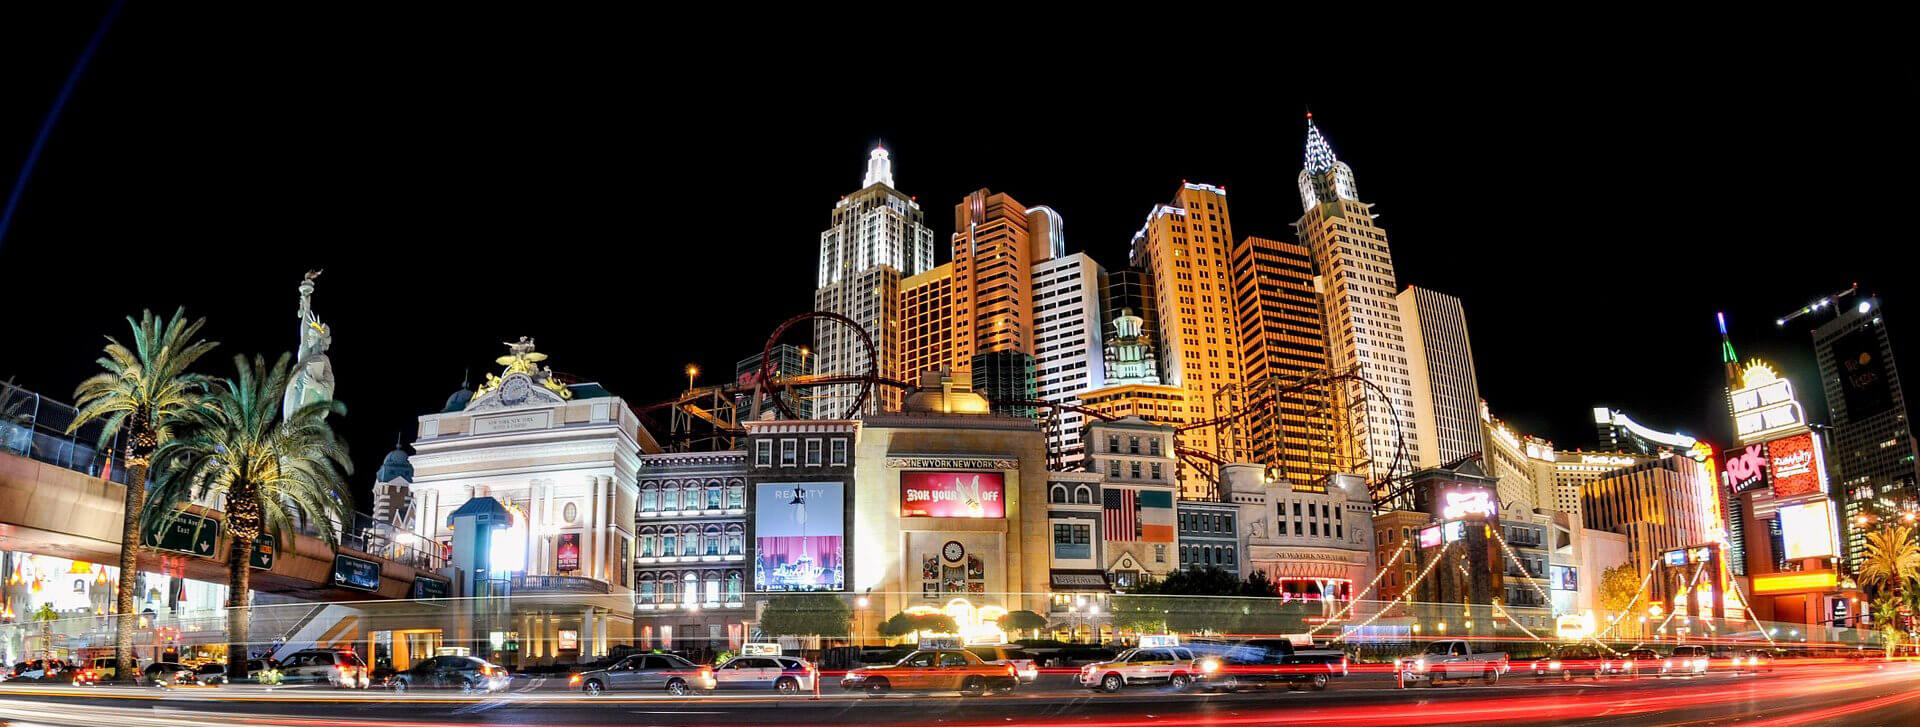 Las Vegas ist schön, aber eine Casino-Nacht im eigenen Heim hat viele Vorteile und ist in der Regel auch deutlich günstiger (Foto: PatternPictures/Pixabay).